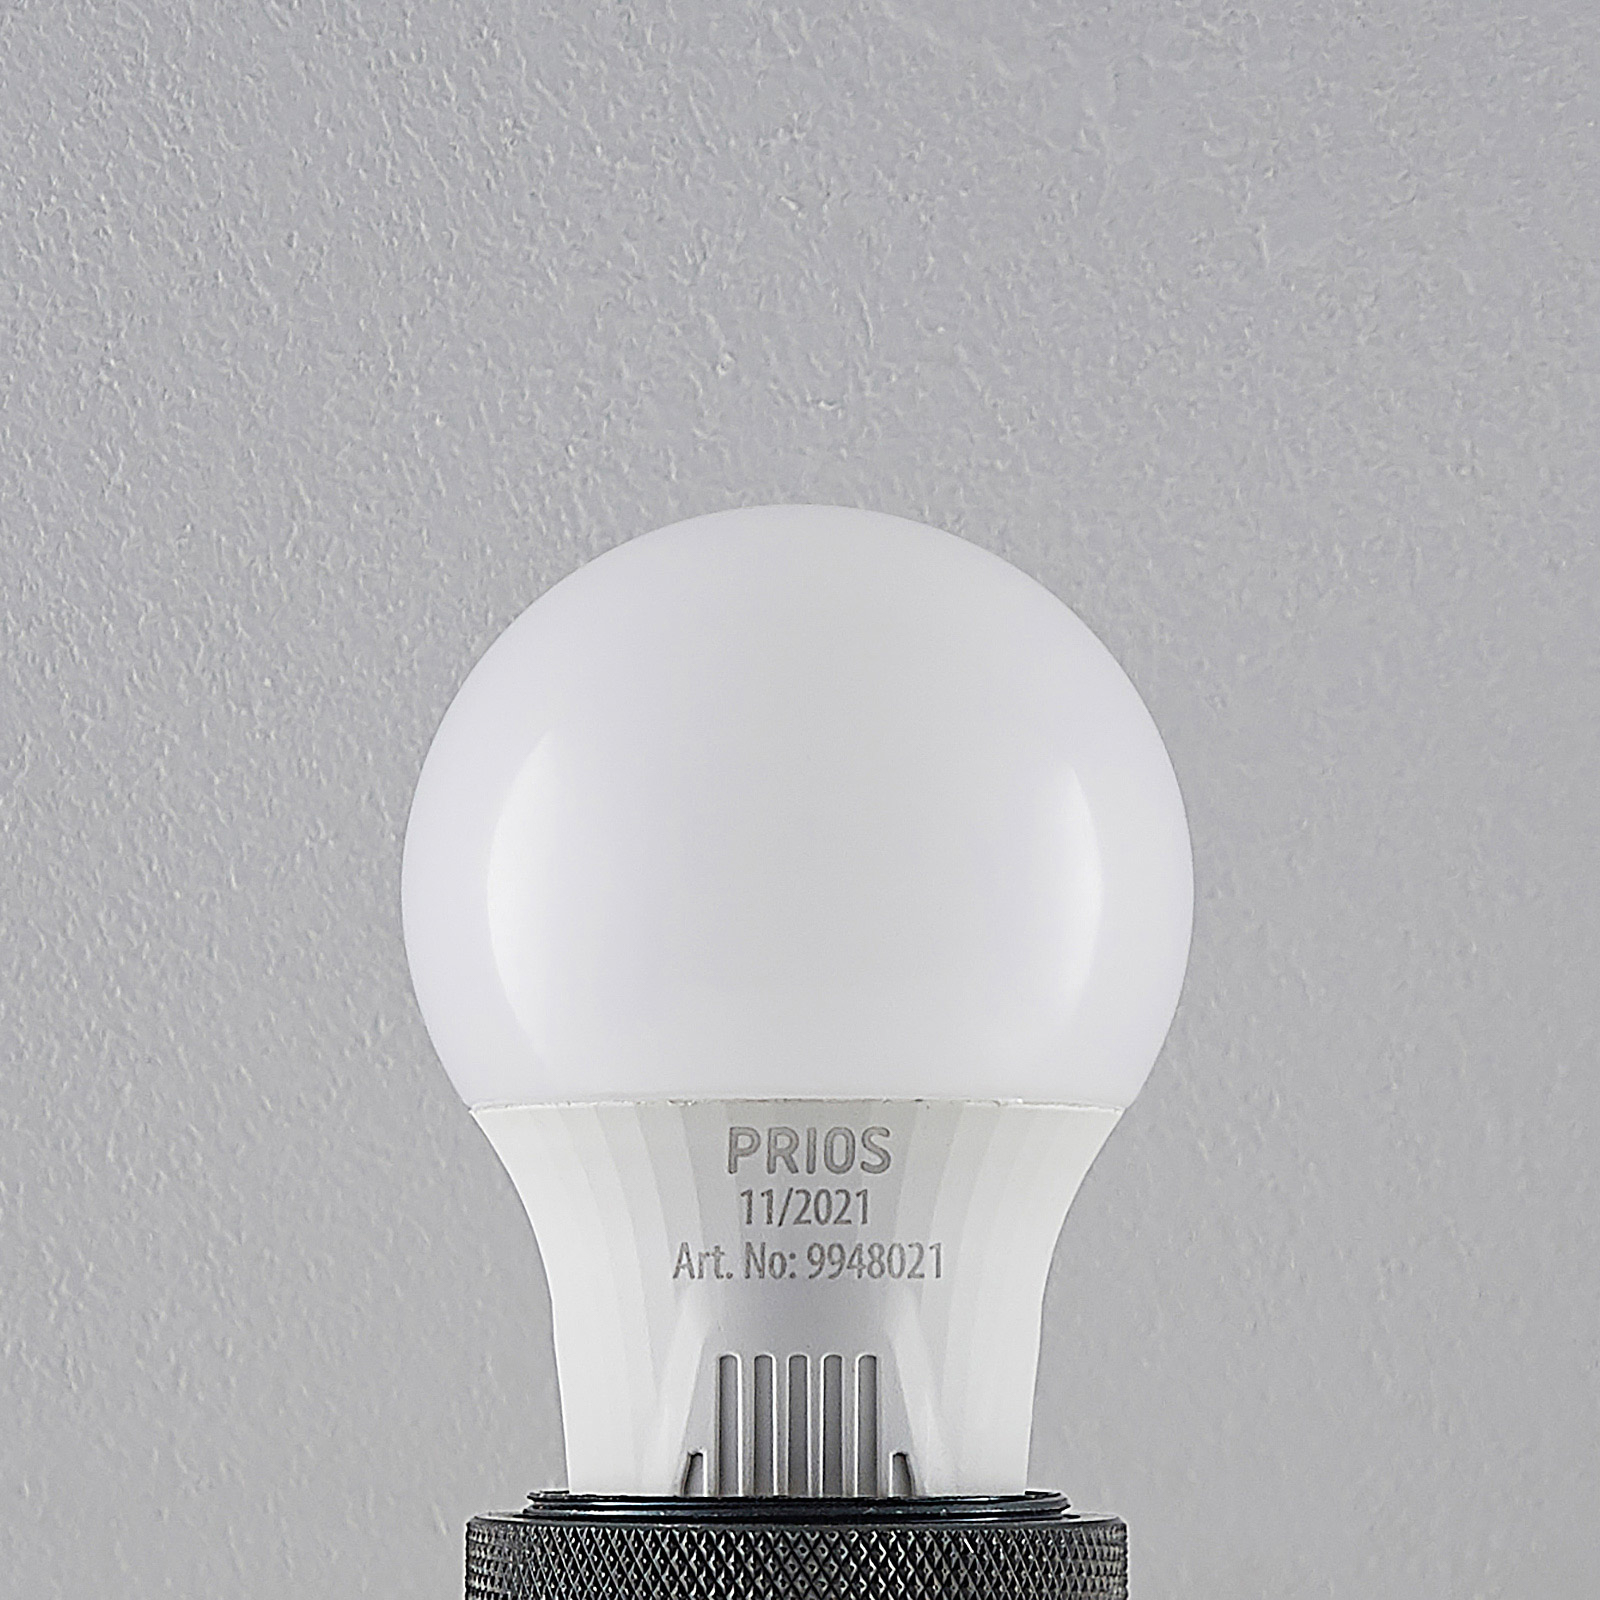 LED žiarovka E27 A60 7 W biela 2 700 K